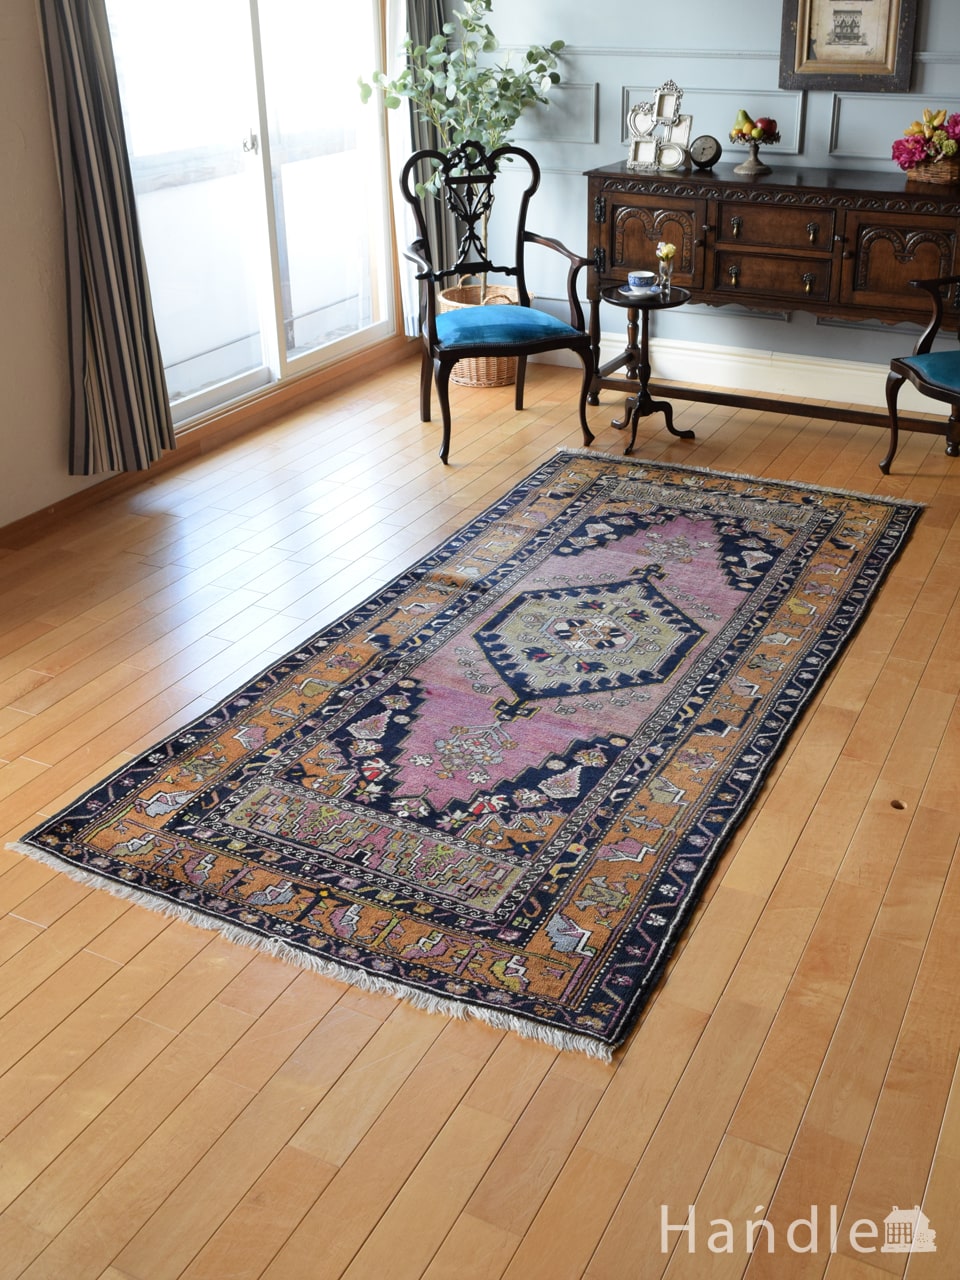 トルコアクサライのおしゃれな絨毯、一点もののビンテージトライバルラグ(m-5087-z)｜アンティーク雑貨